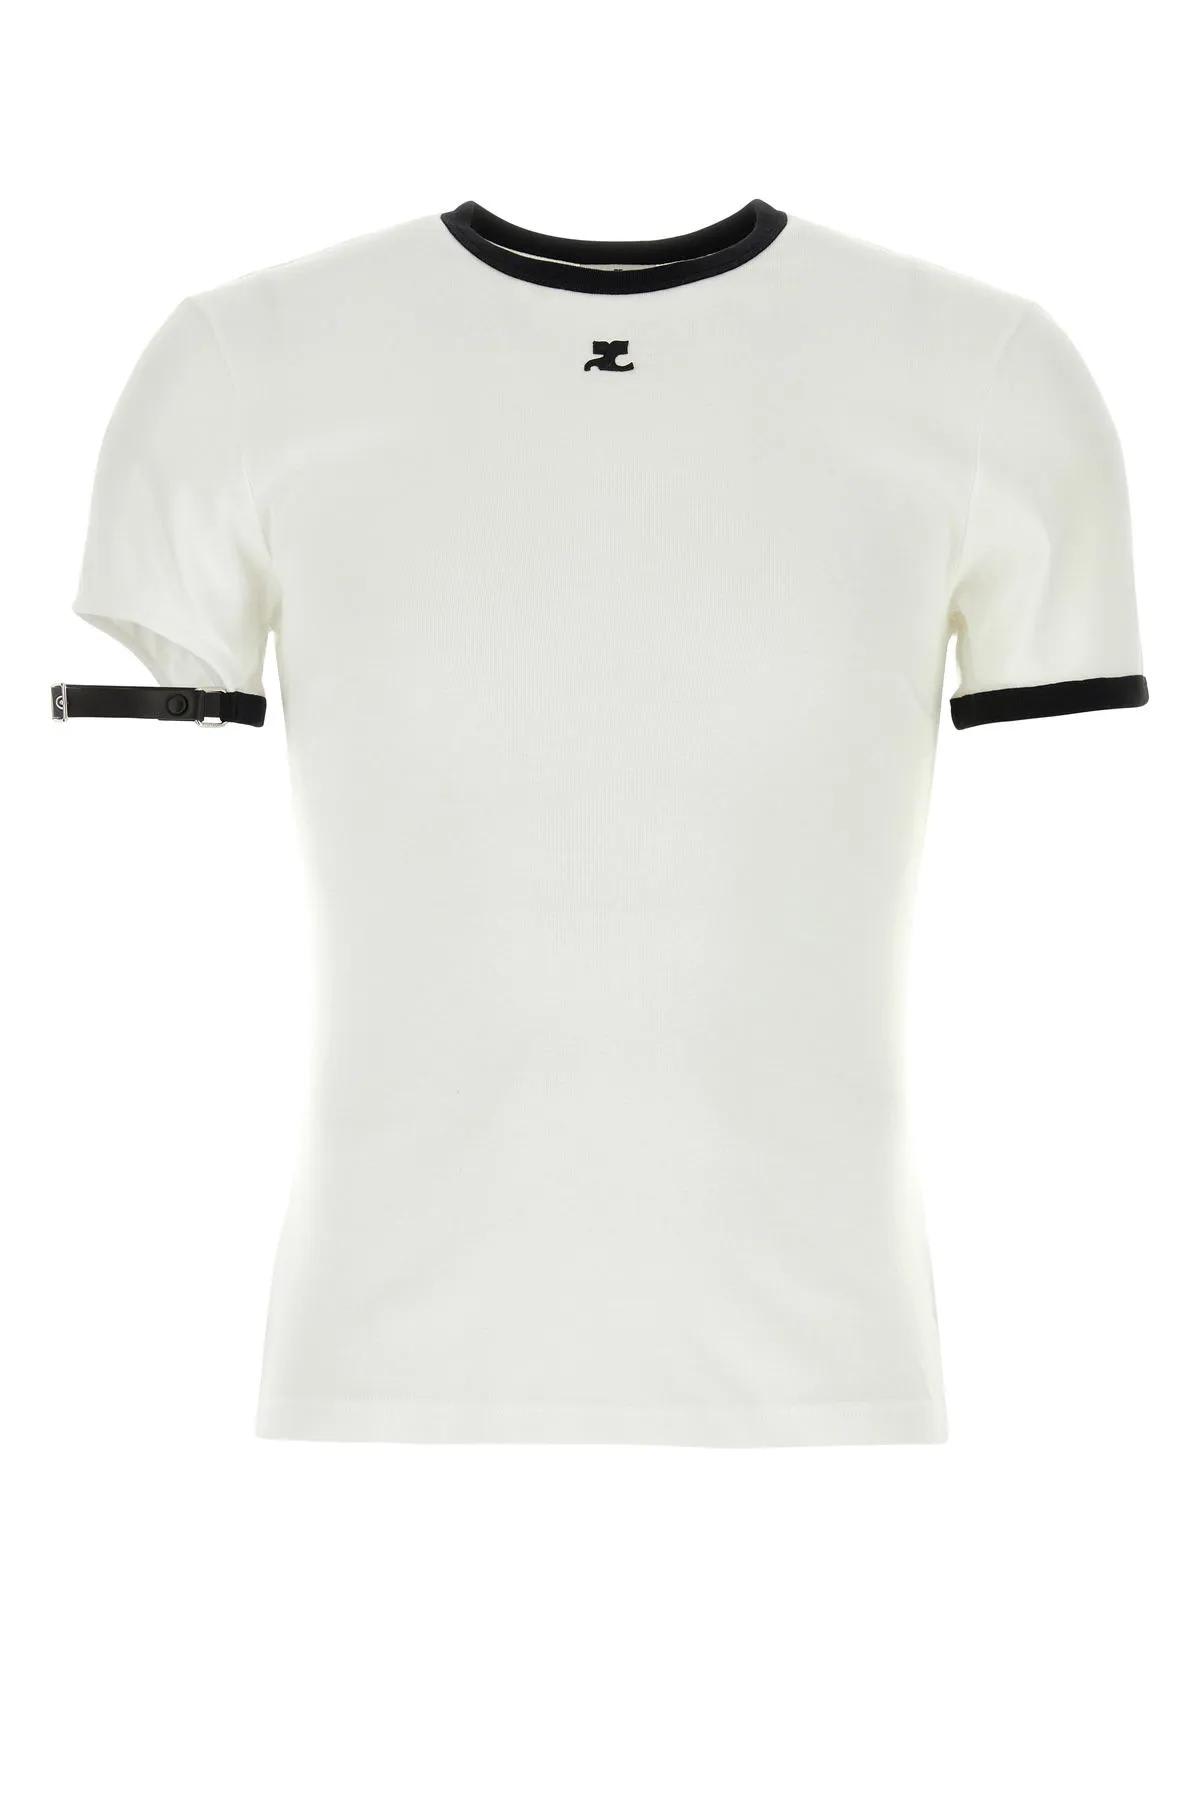 Shop Courrèges White Cotton T-shirt